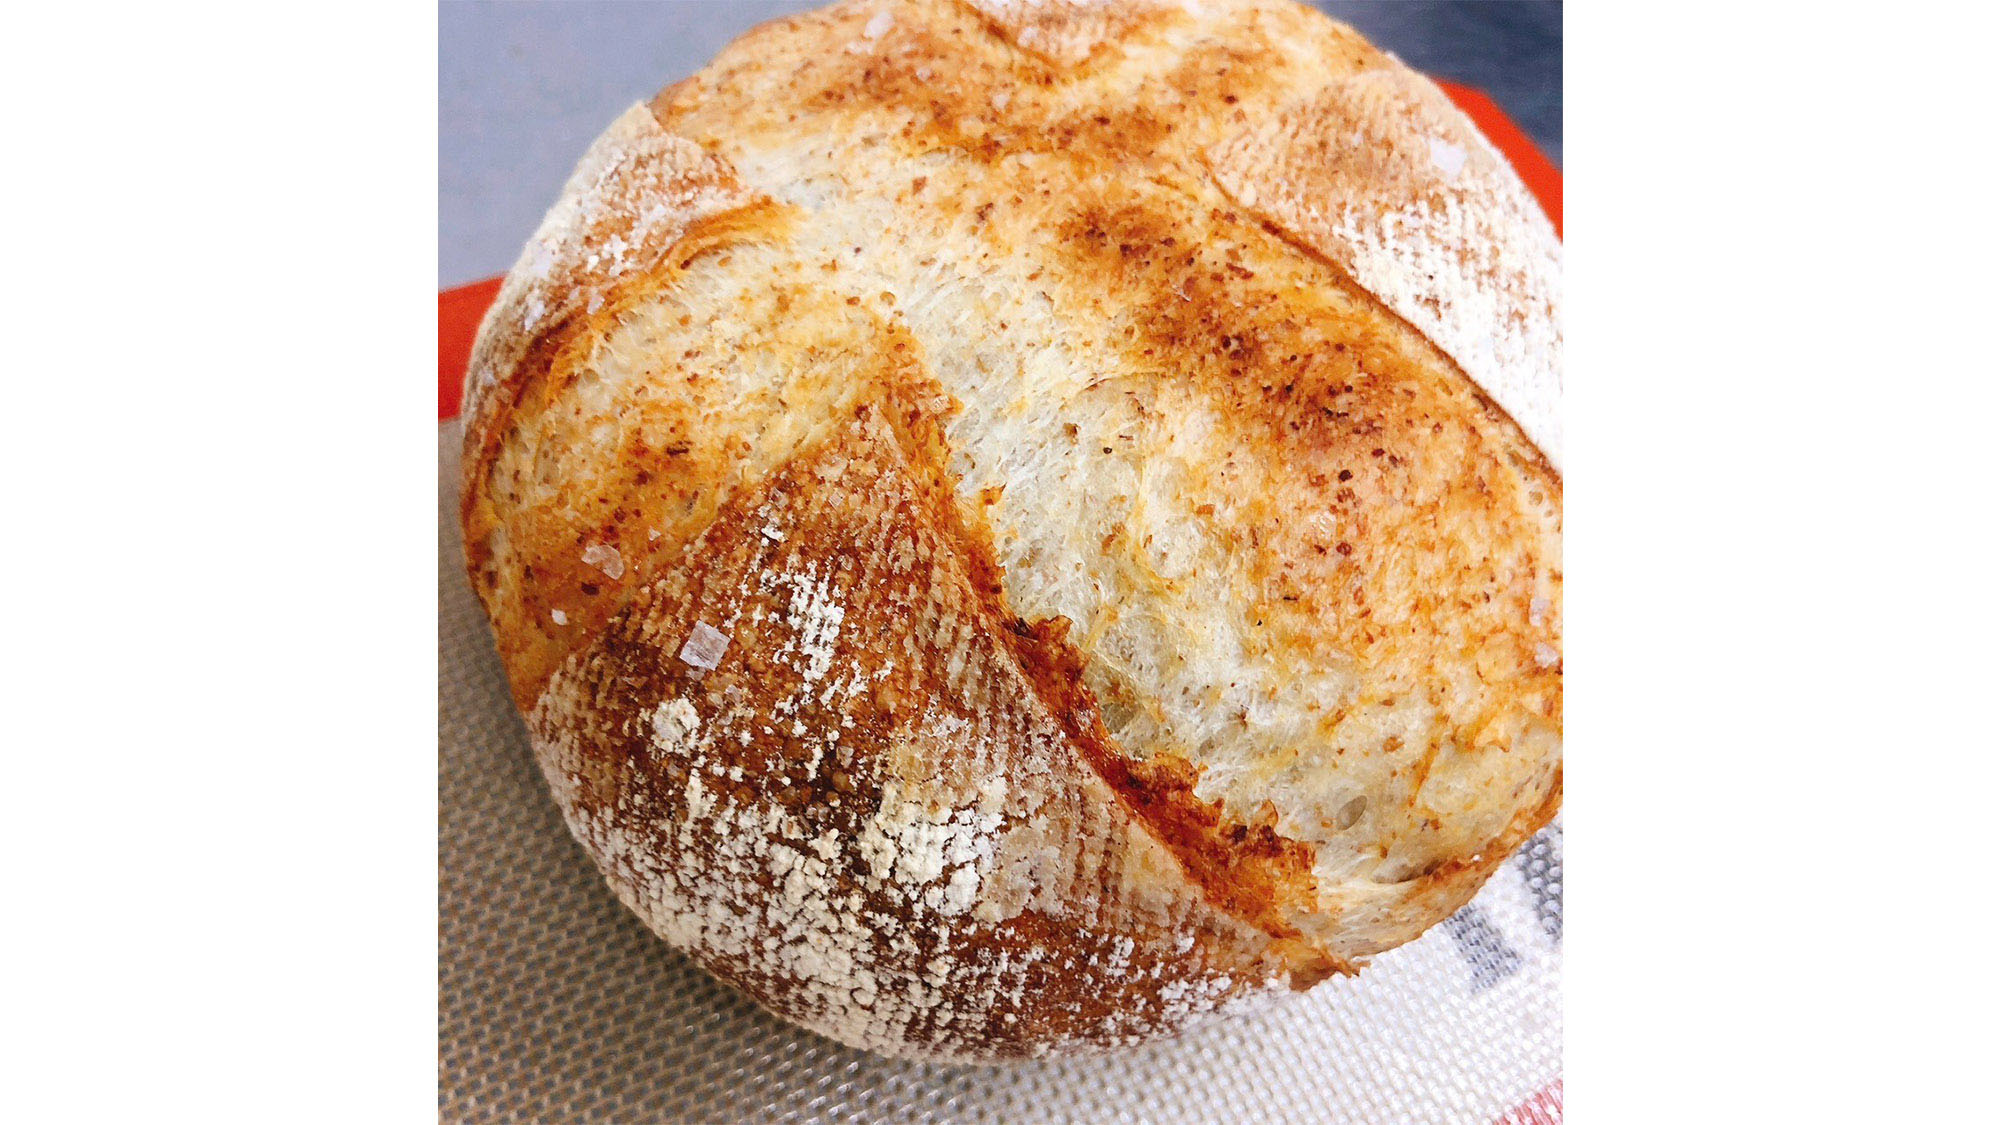 ・【ディナー一例】焼き立てのパンは香ばしさがたまりません